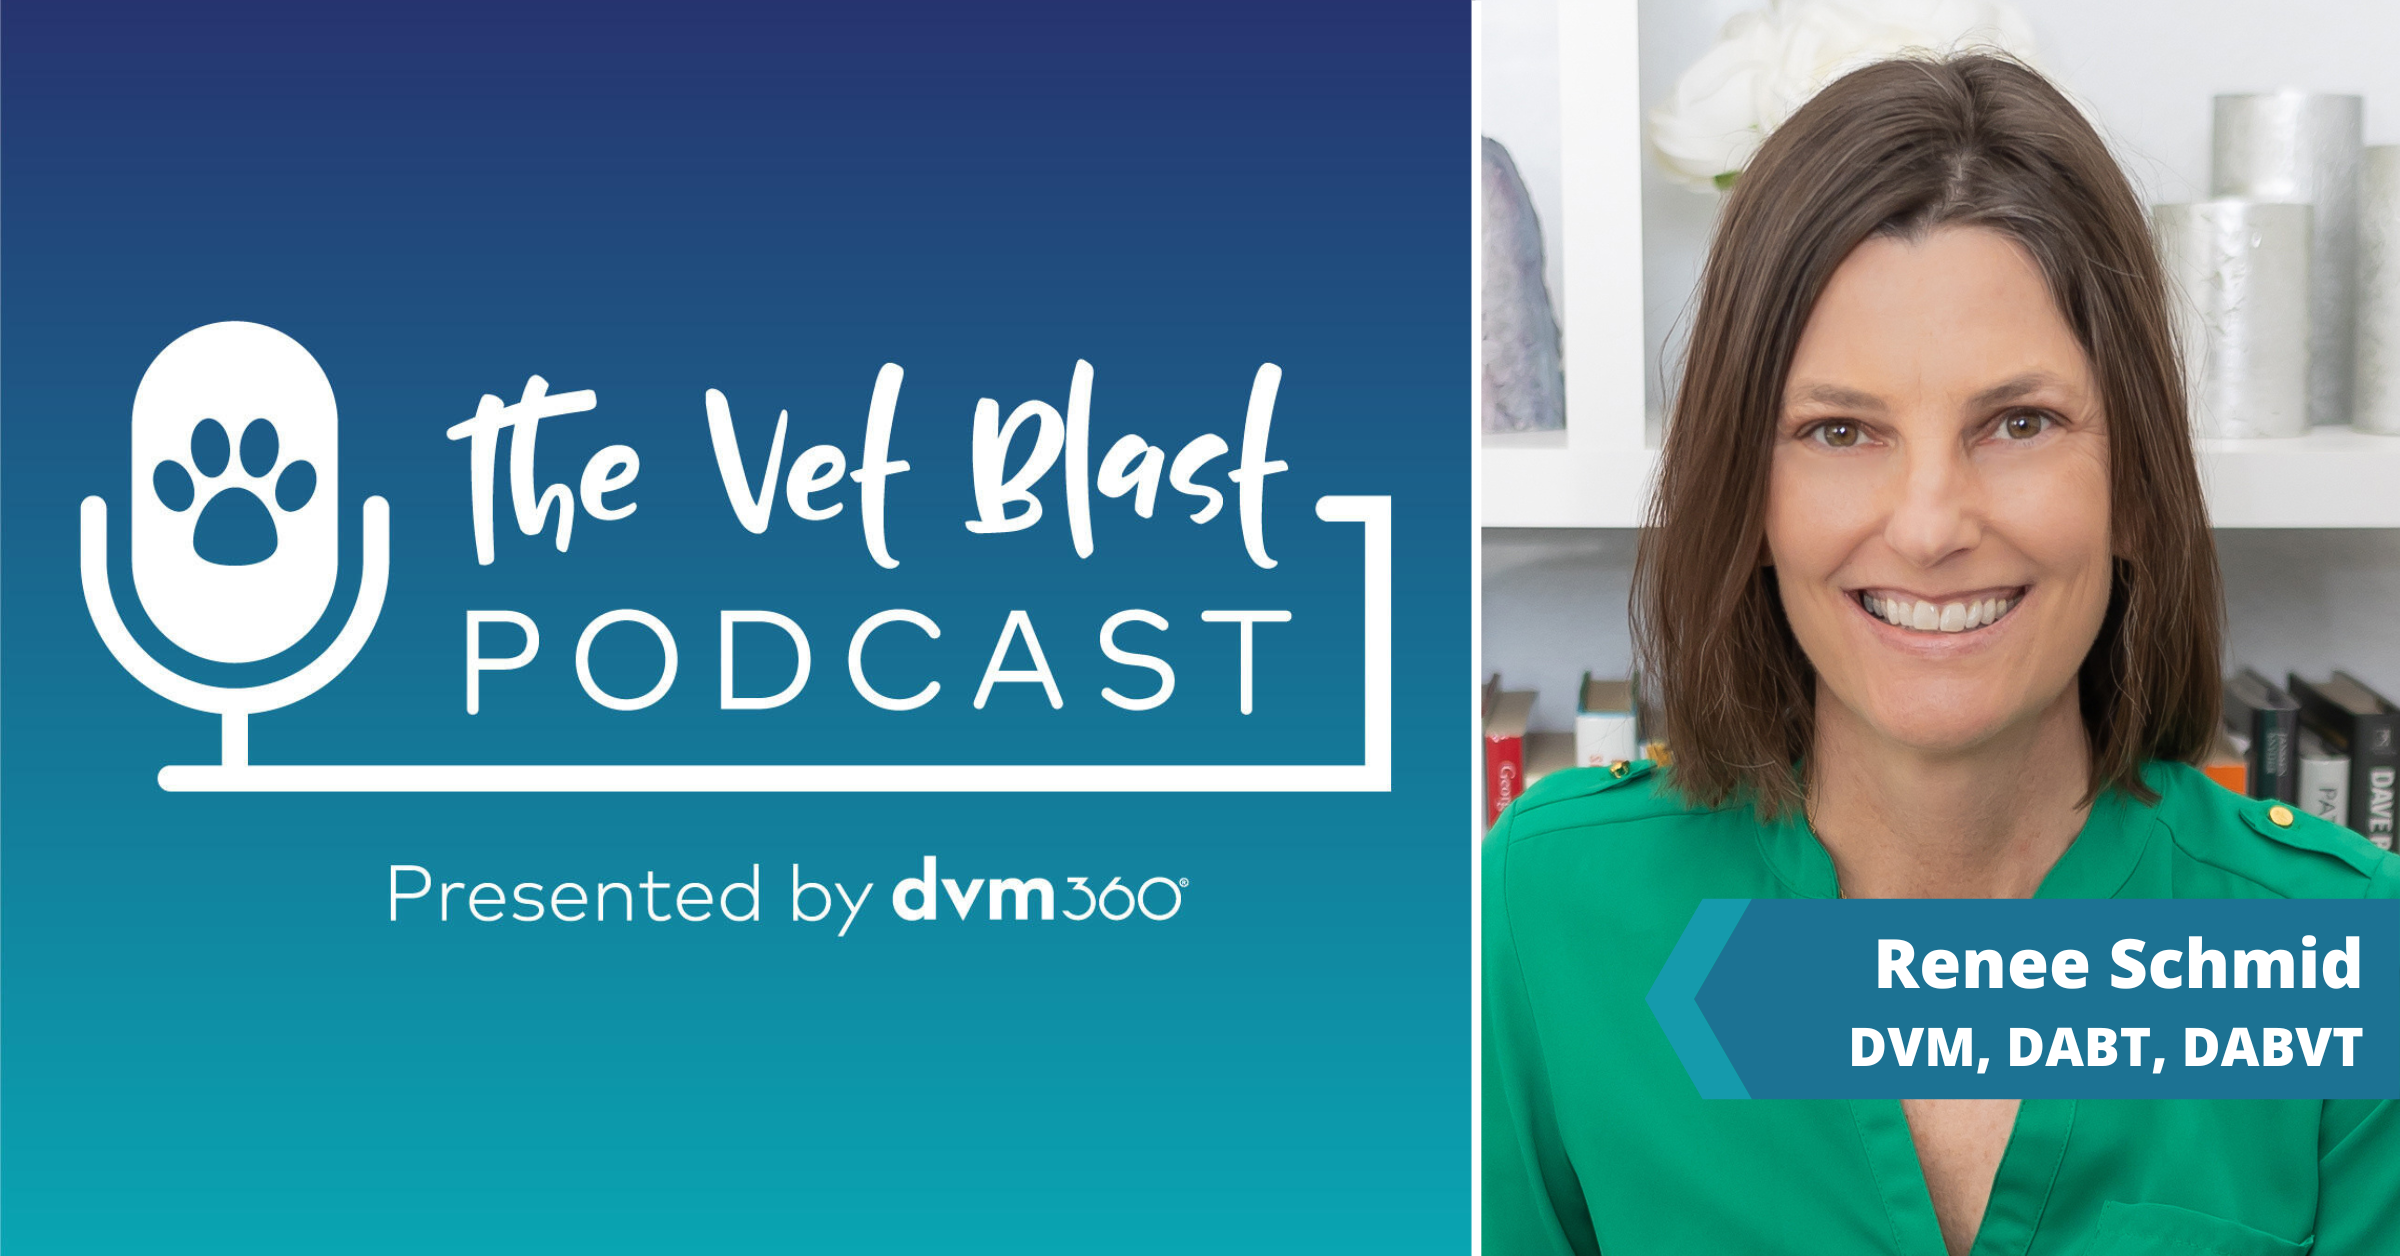 The Vet Blast Podcast